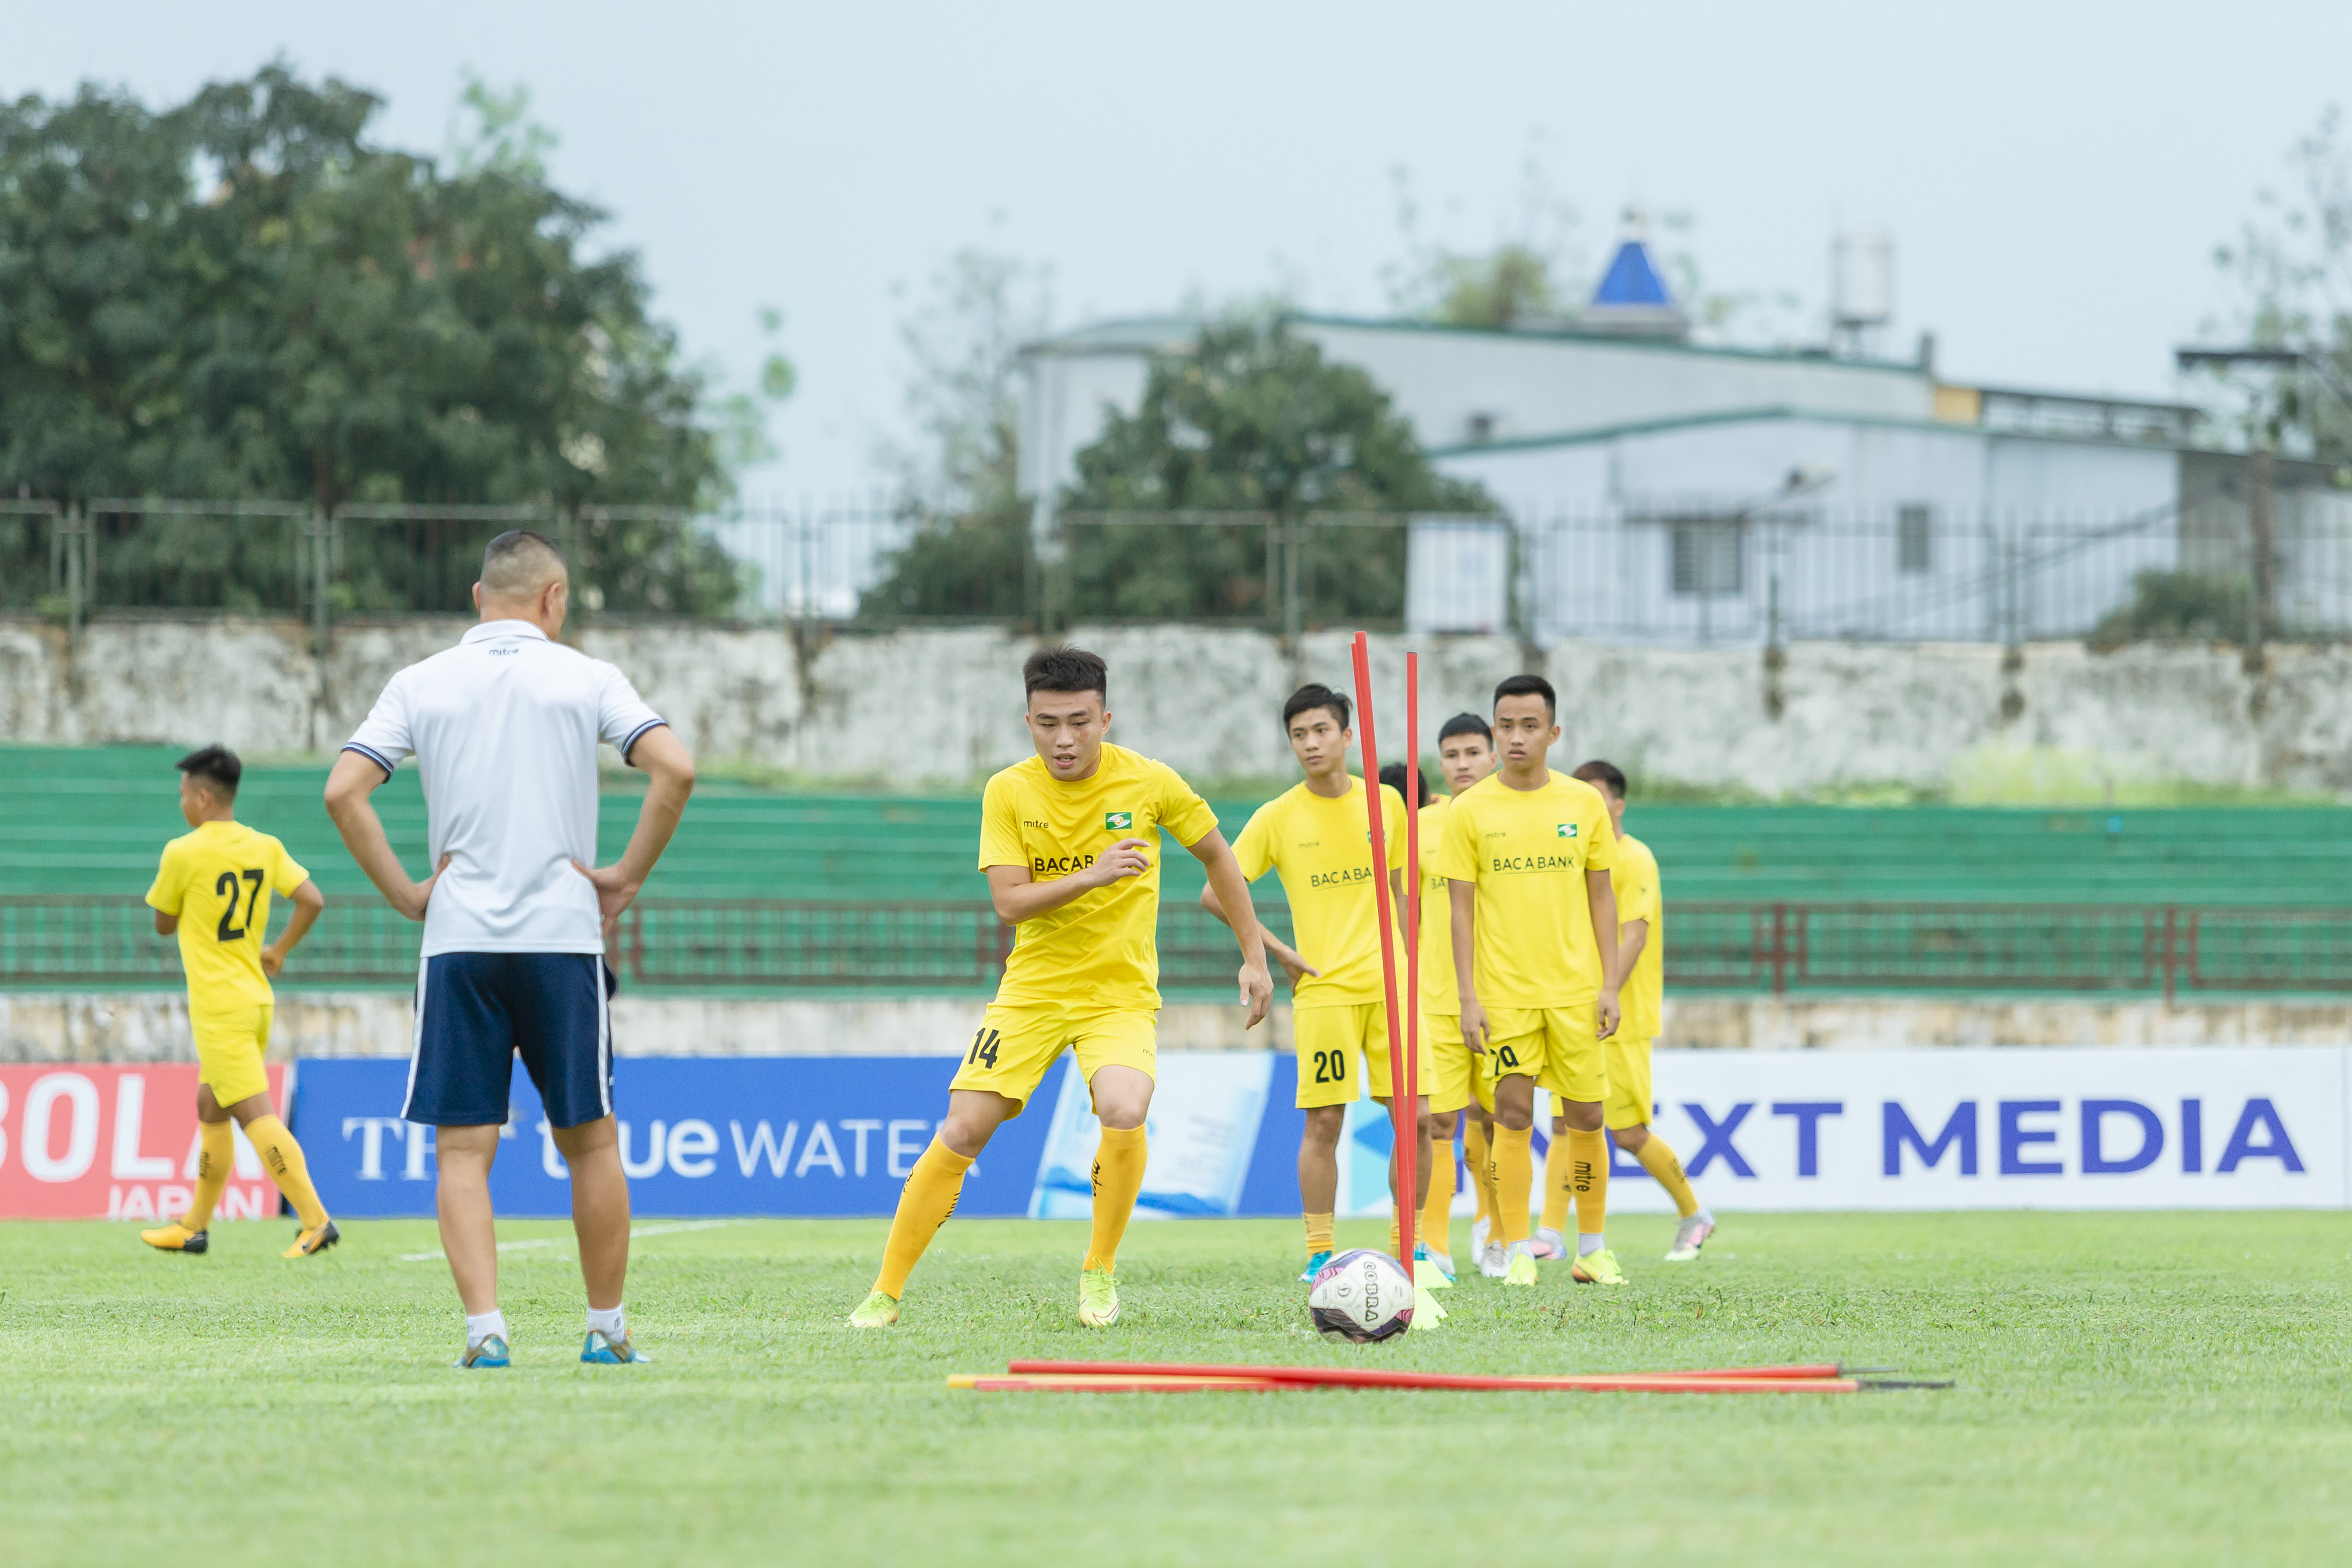 Những cầu thủ trẻ như Nguyễn Văn Việt cũng đang củng cố được niềm tin khi được trao cơ hội thi đấu. Ảnh: Hoàng Cường